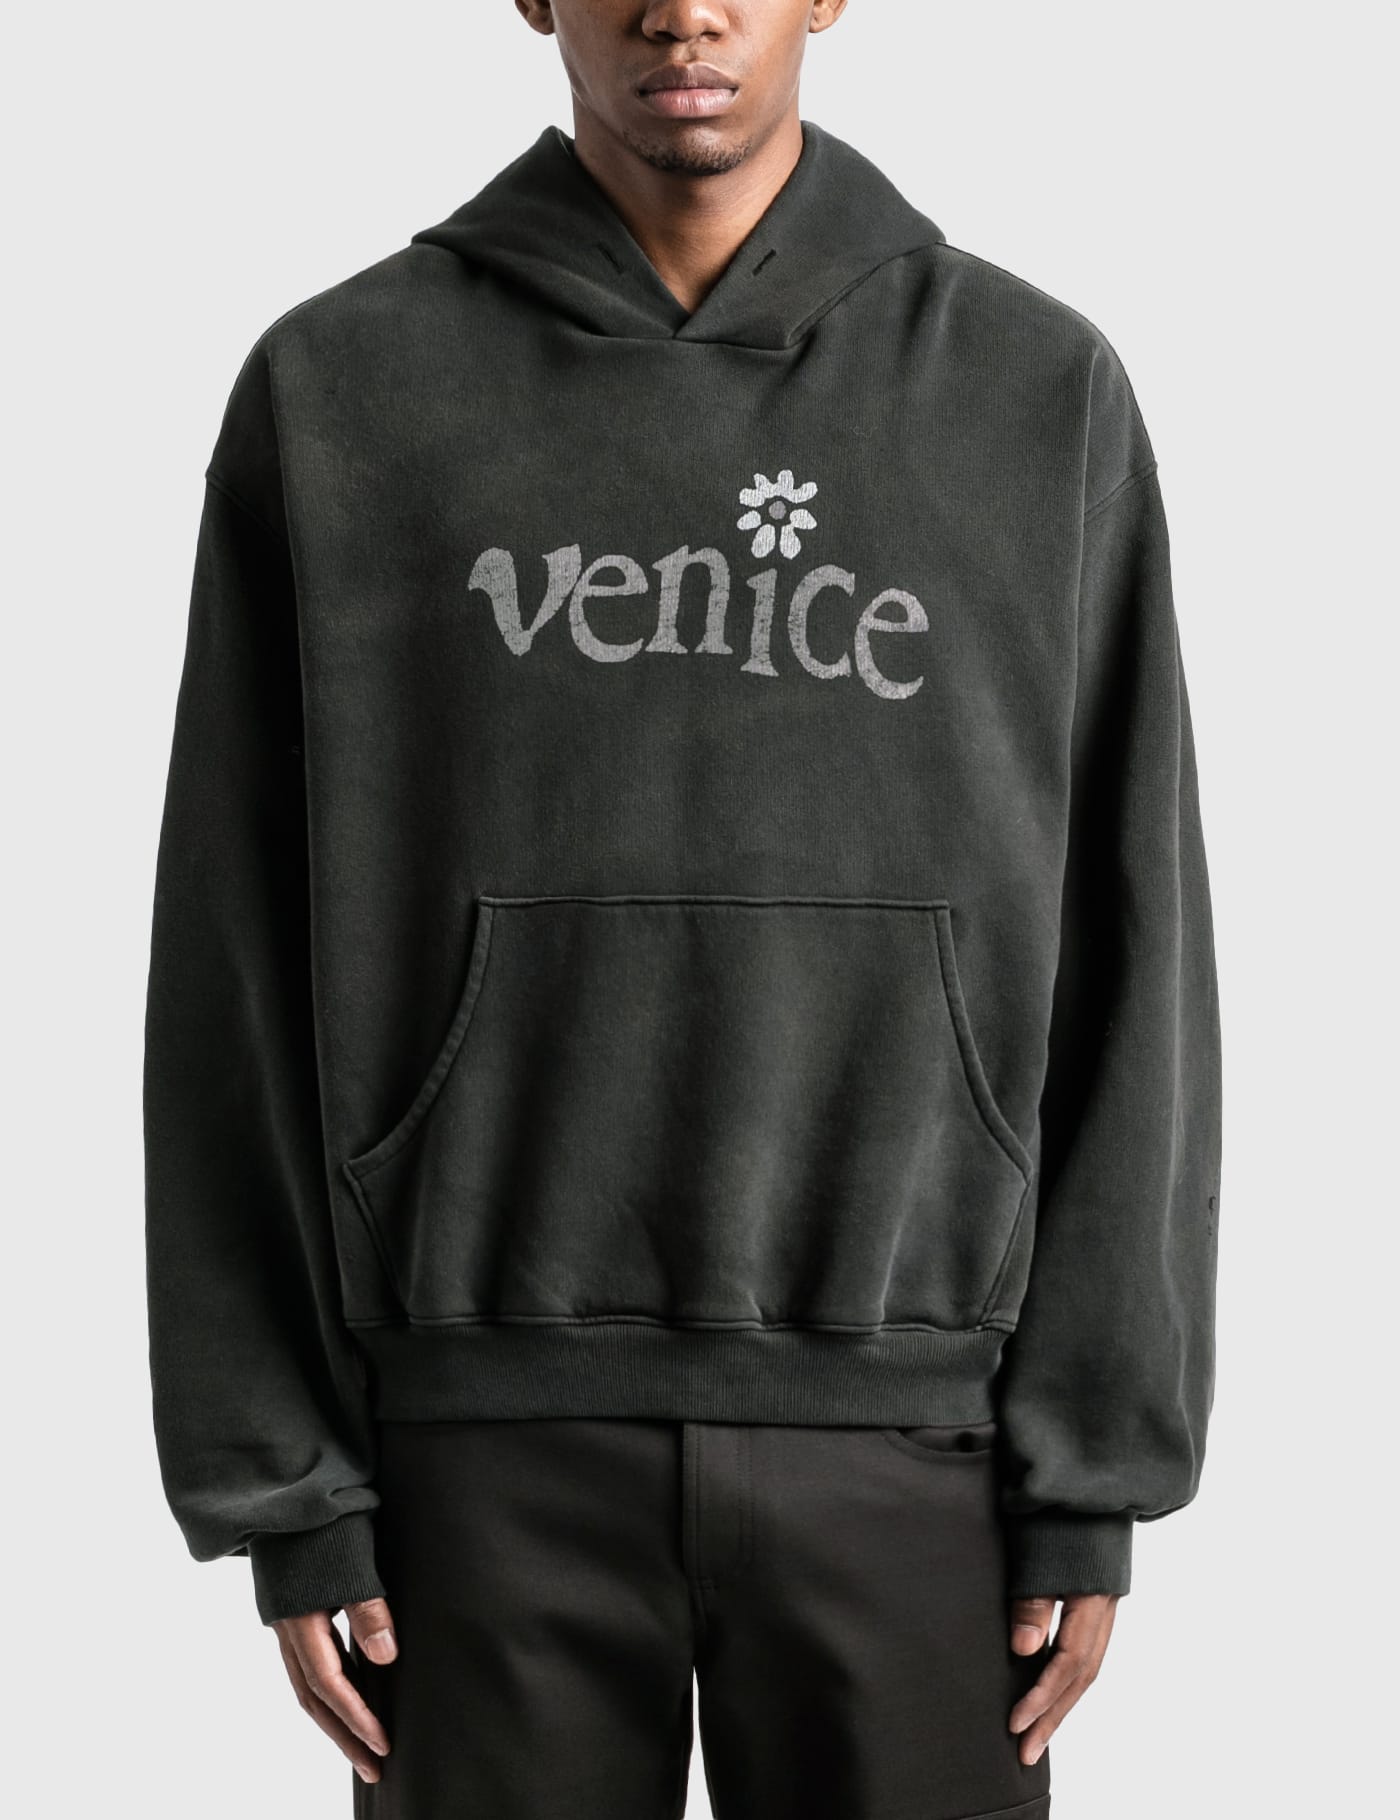 こちらは中古品になりますerl venice hoodie